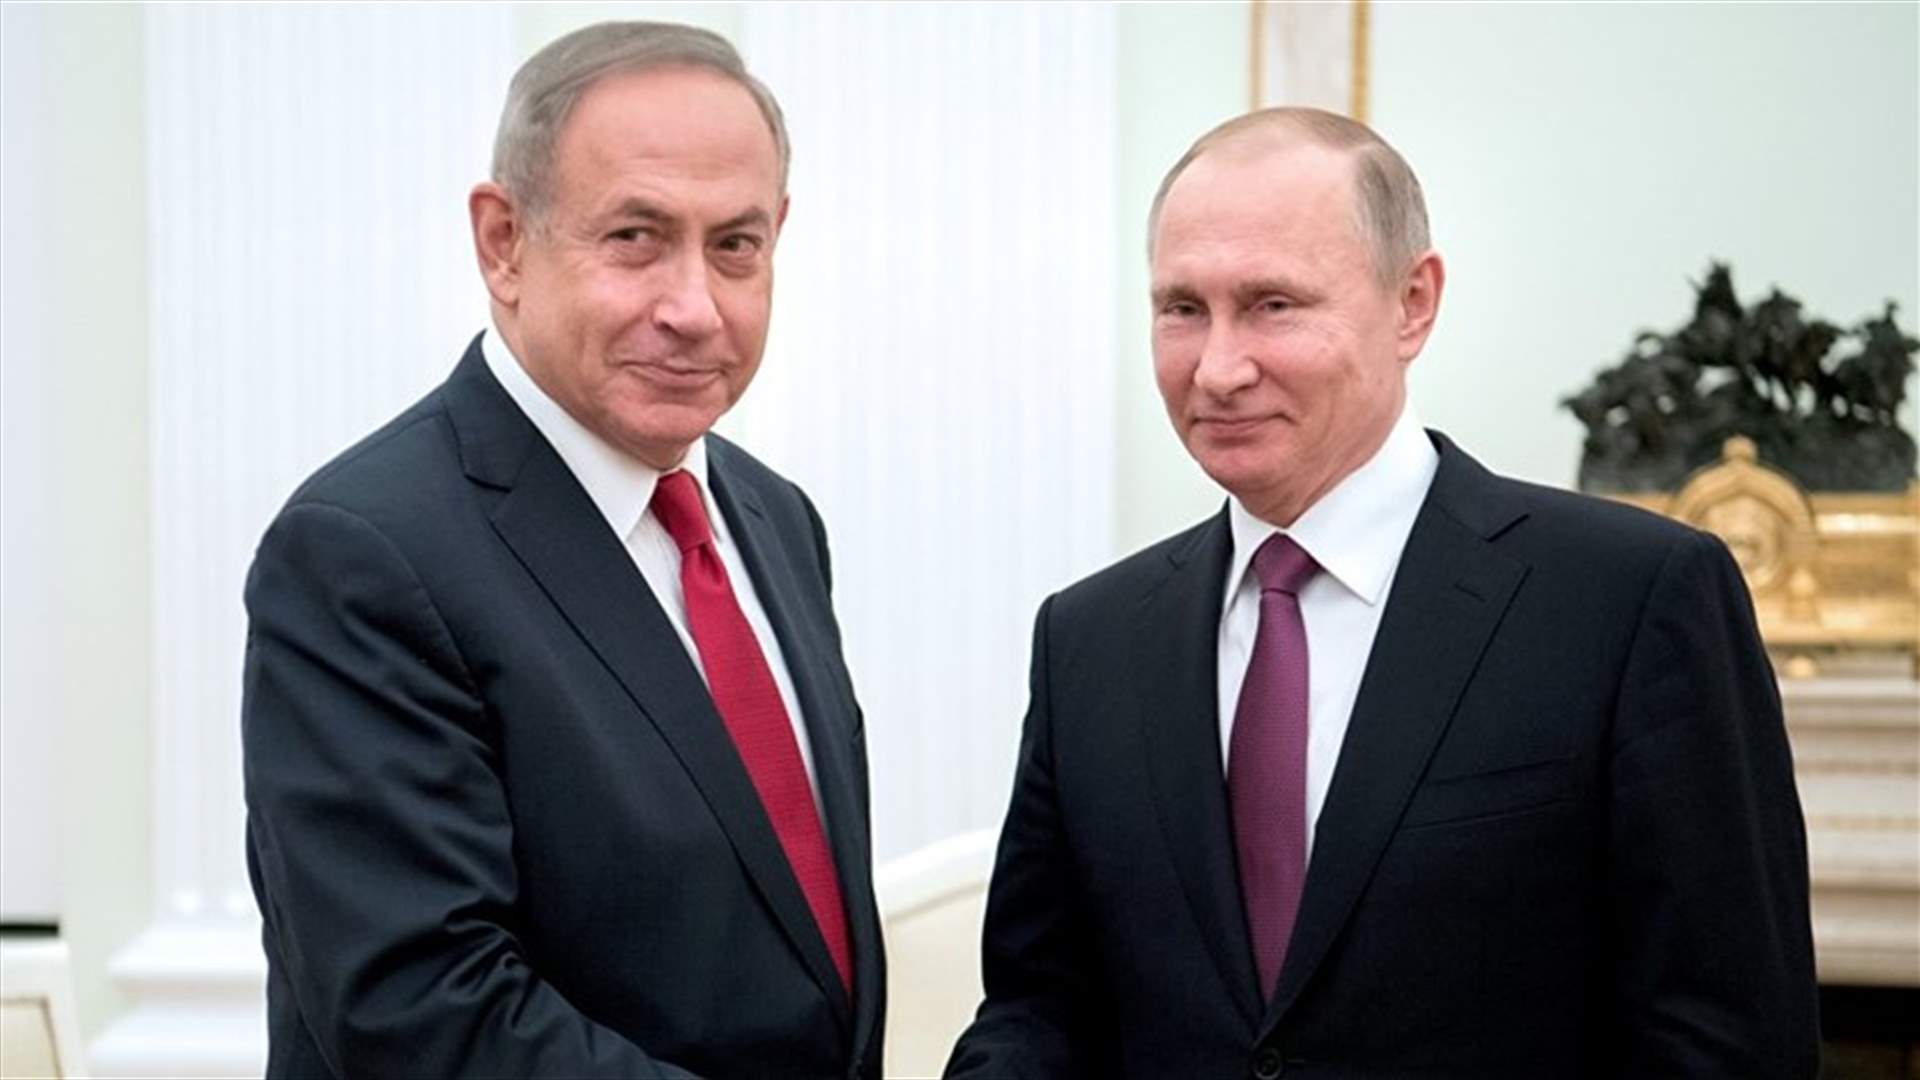 Netanyahu-Putin meeting delayed